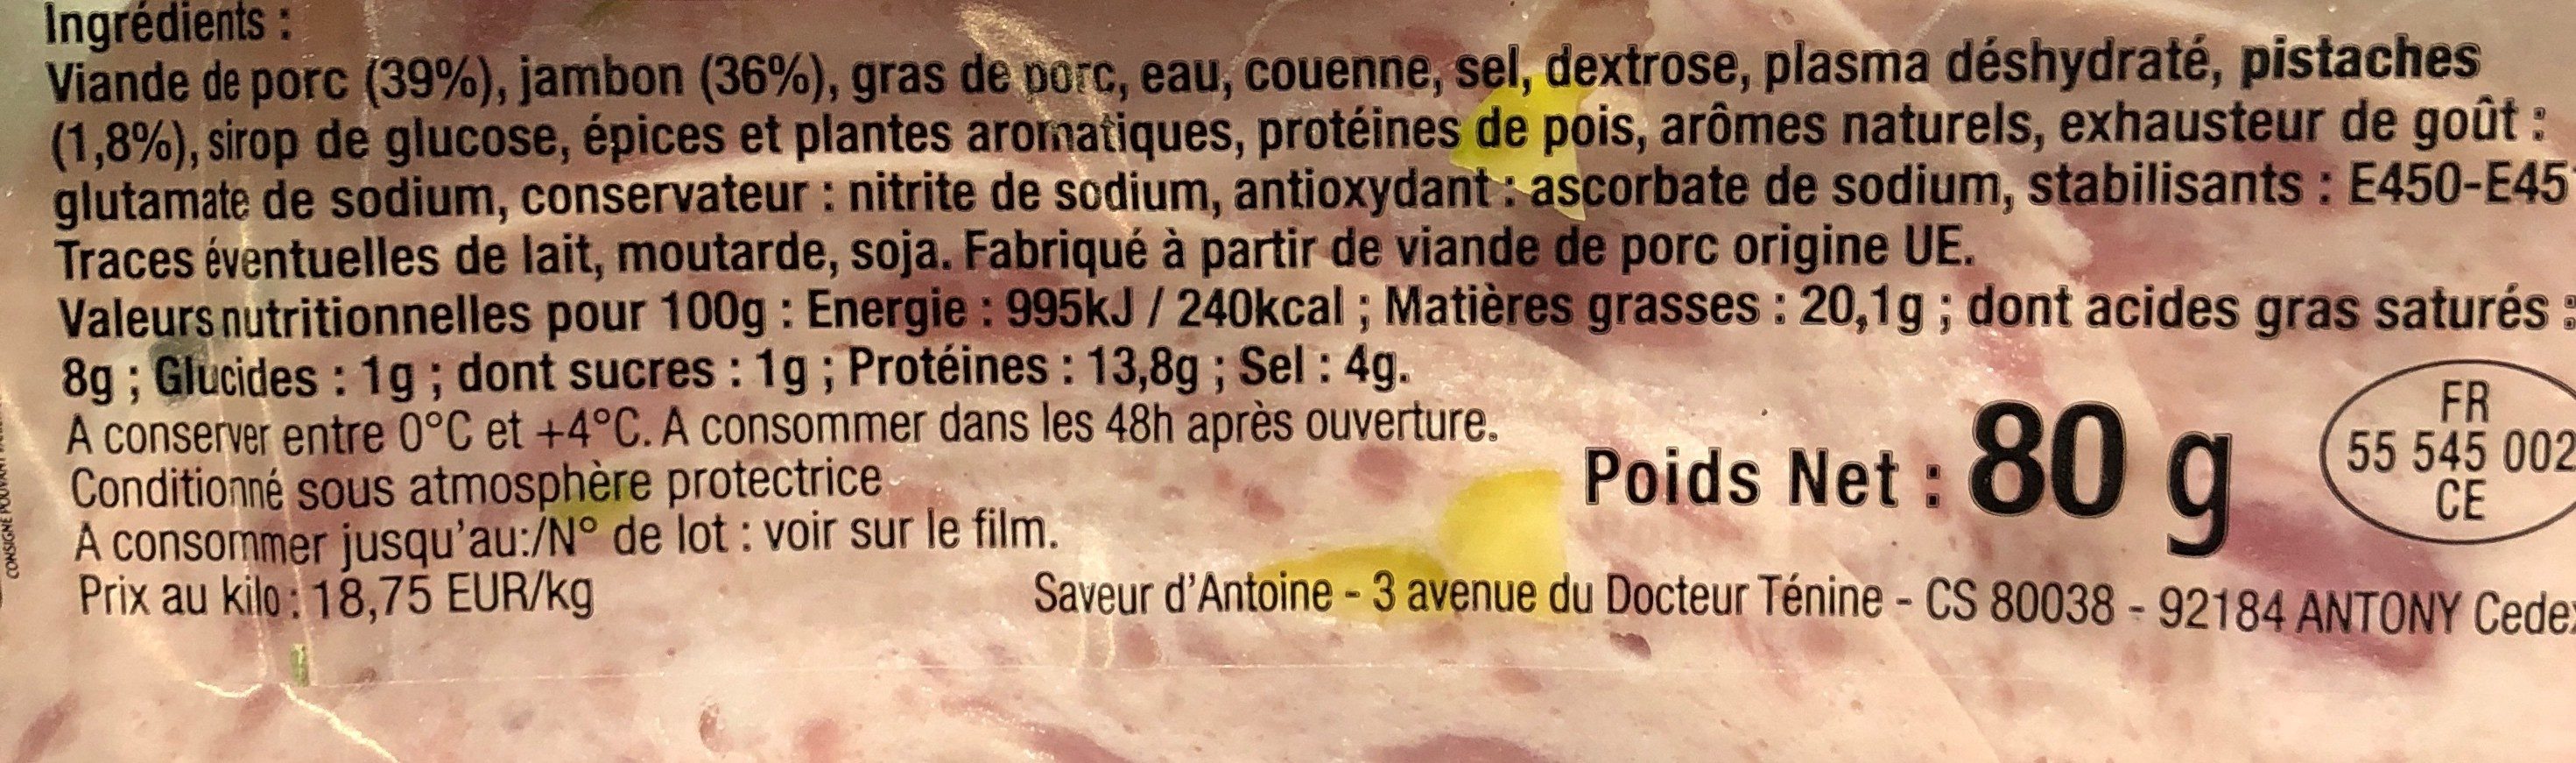 Roulade au jambon pistachee - Ingredients - fr